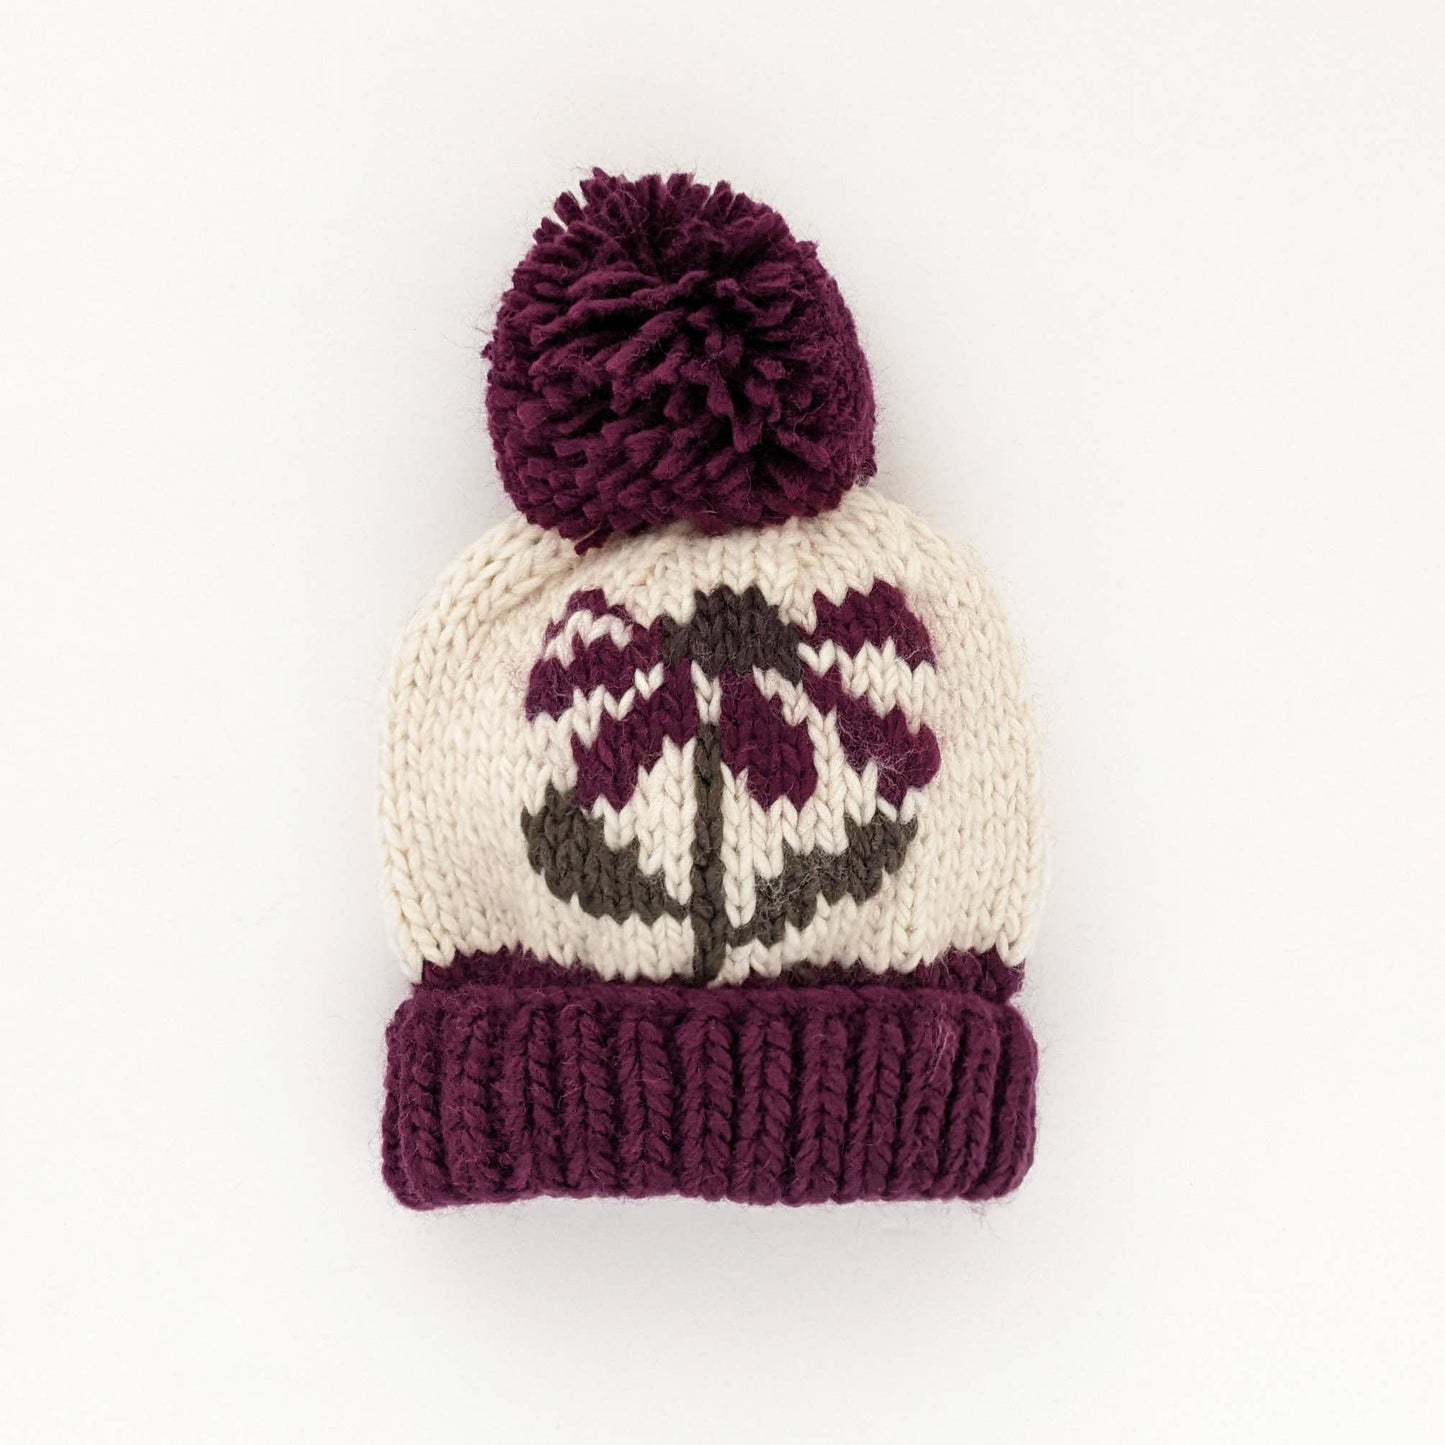 Huggalugs - Coneflower Plum Hand Knit Beanie Hat